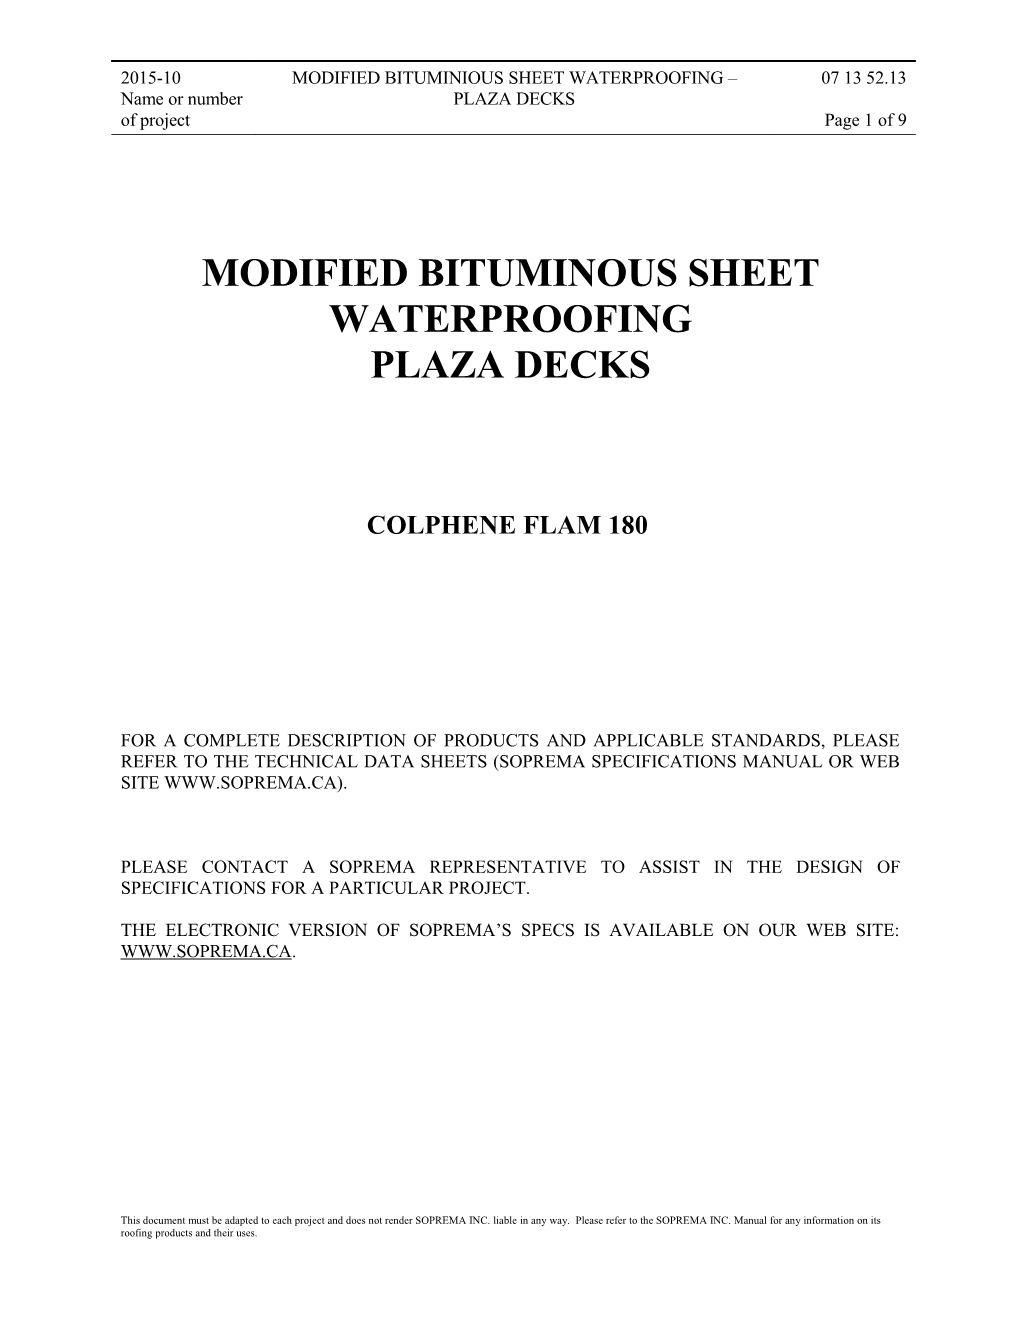 Modified Bituminous Sheet Waterproofing